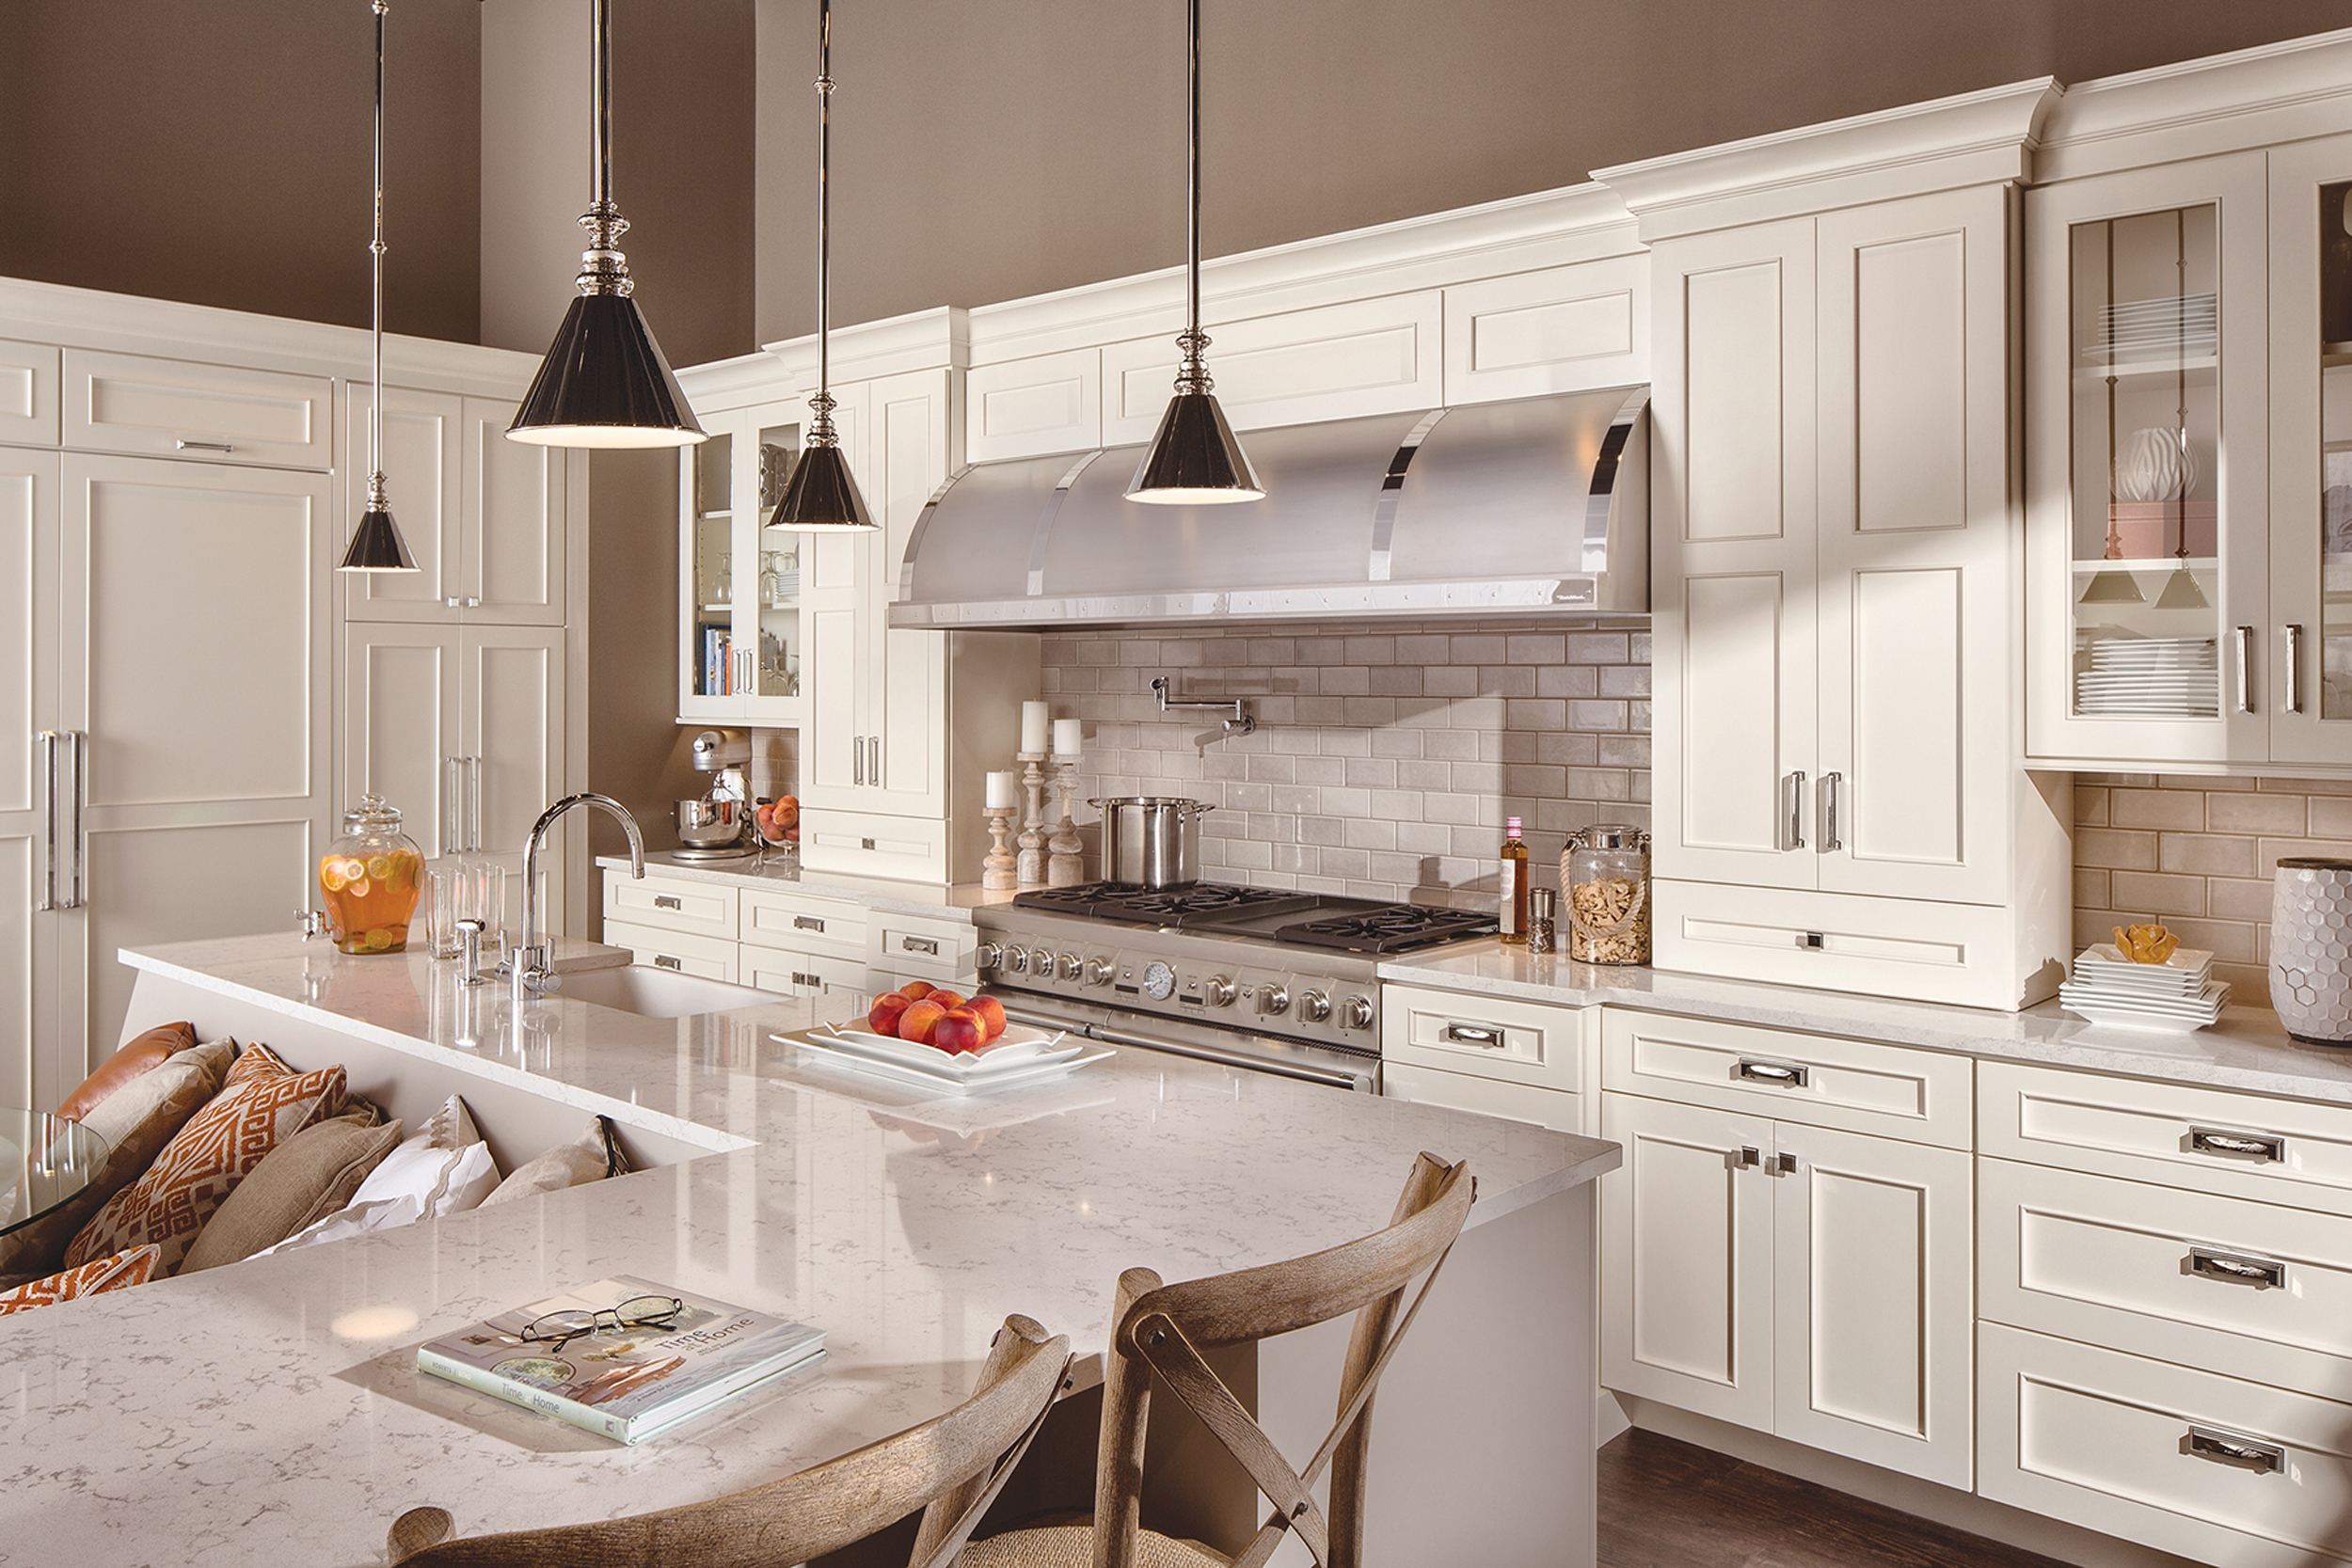 Modern Cottage Kitchens | Home Design Inspiration ...